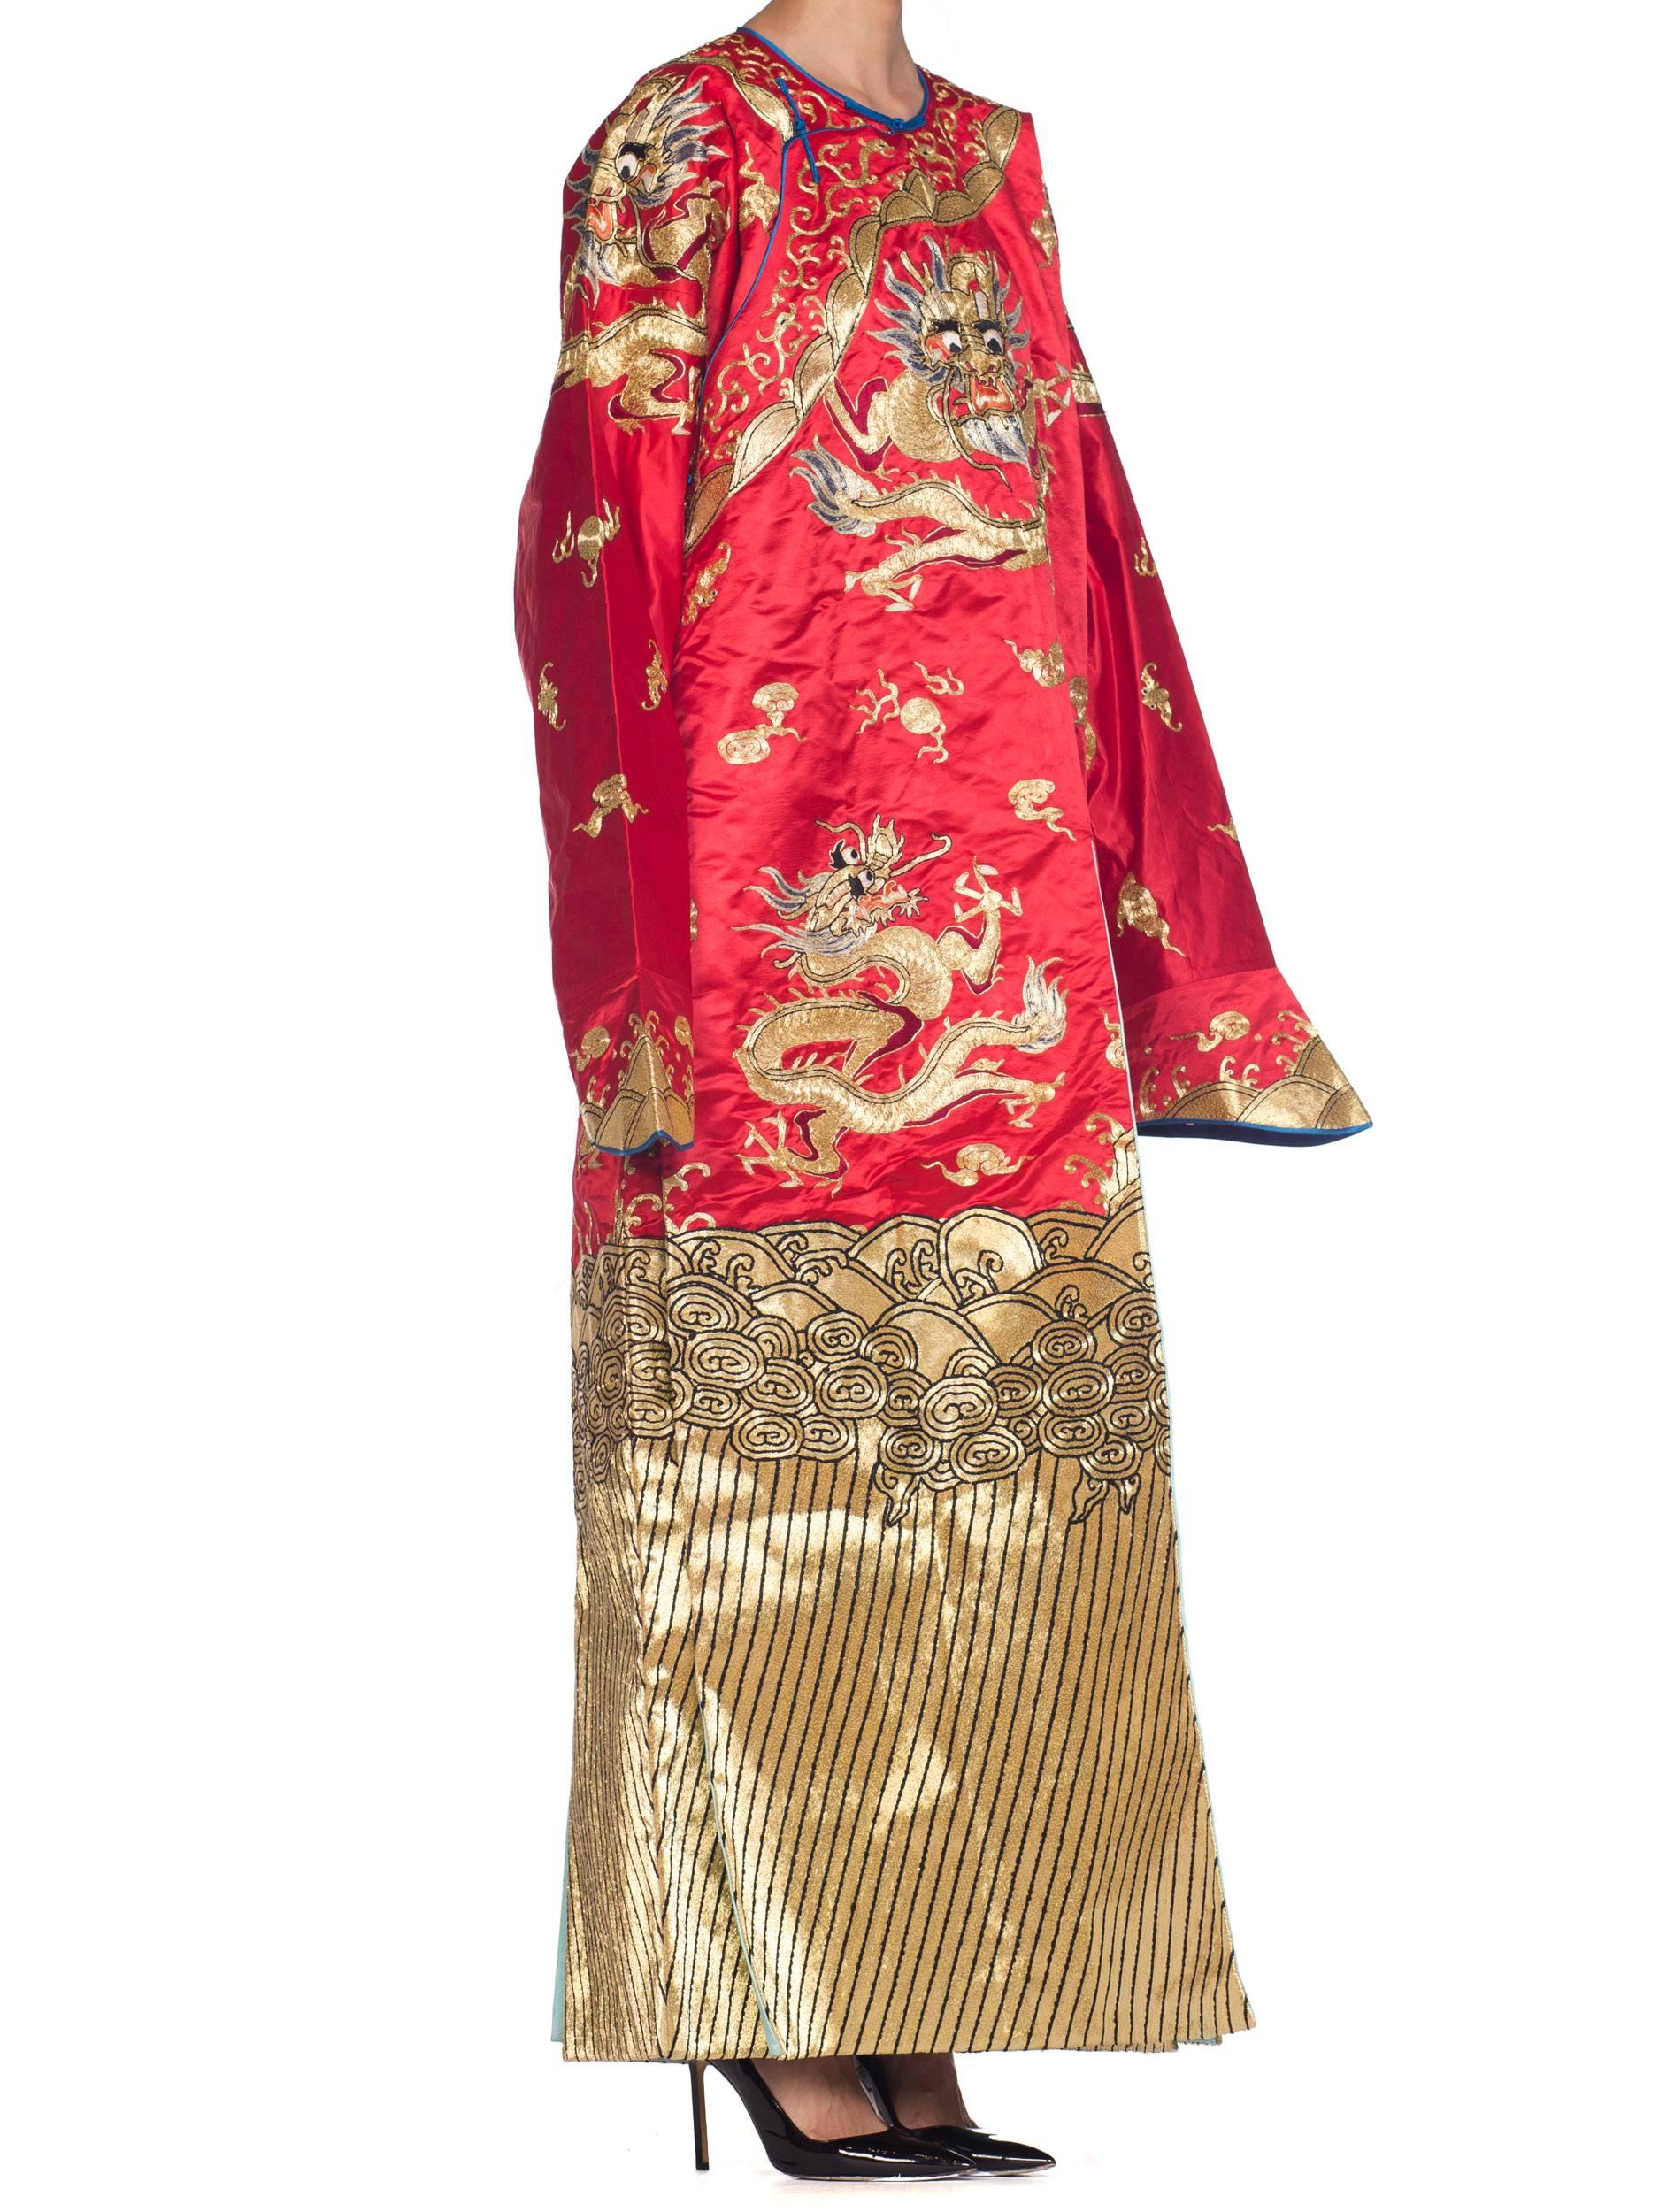 1950s chinese fashion